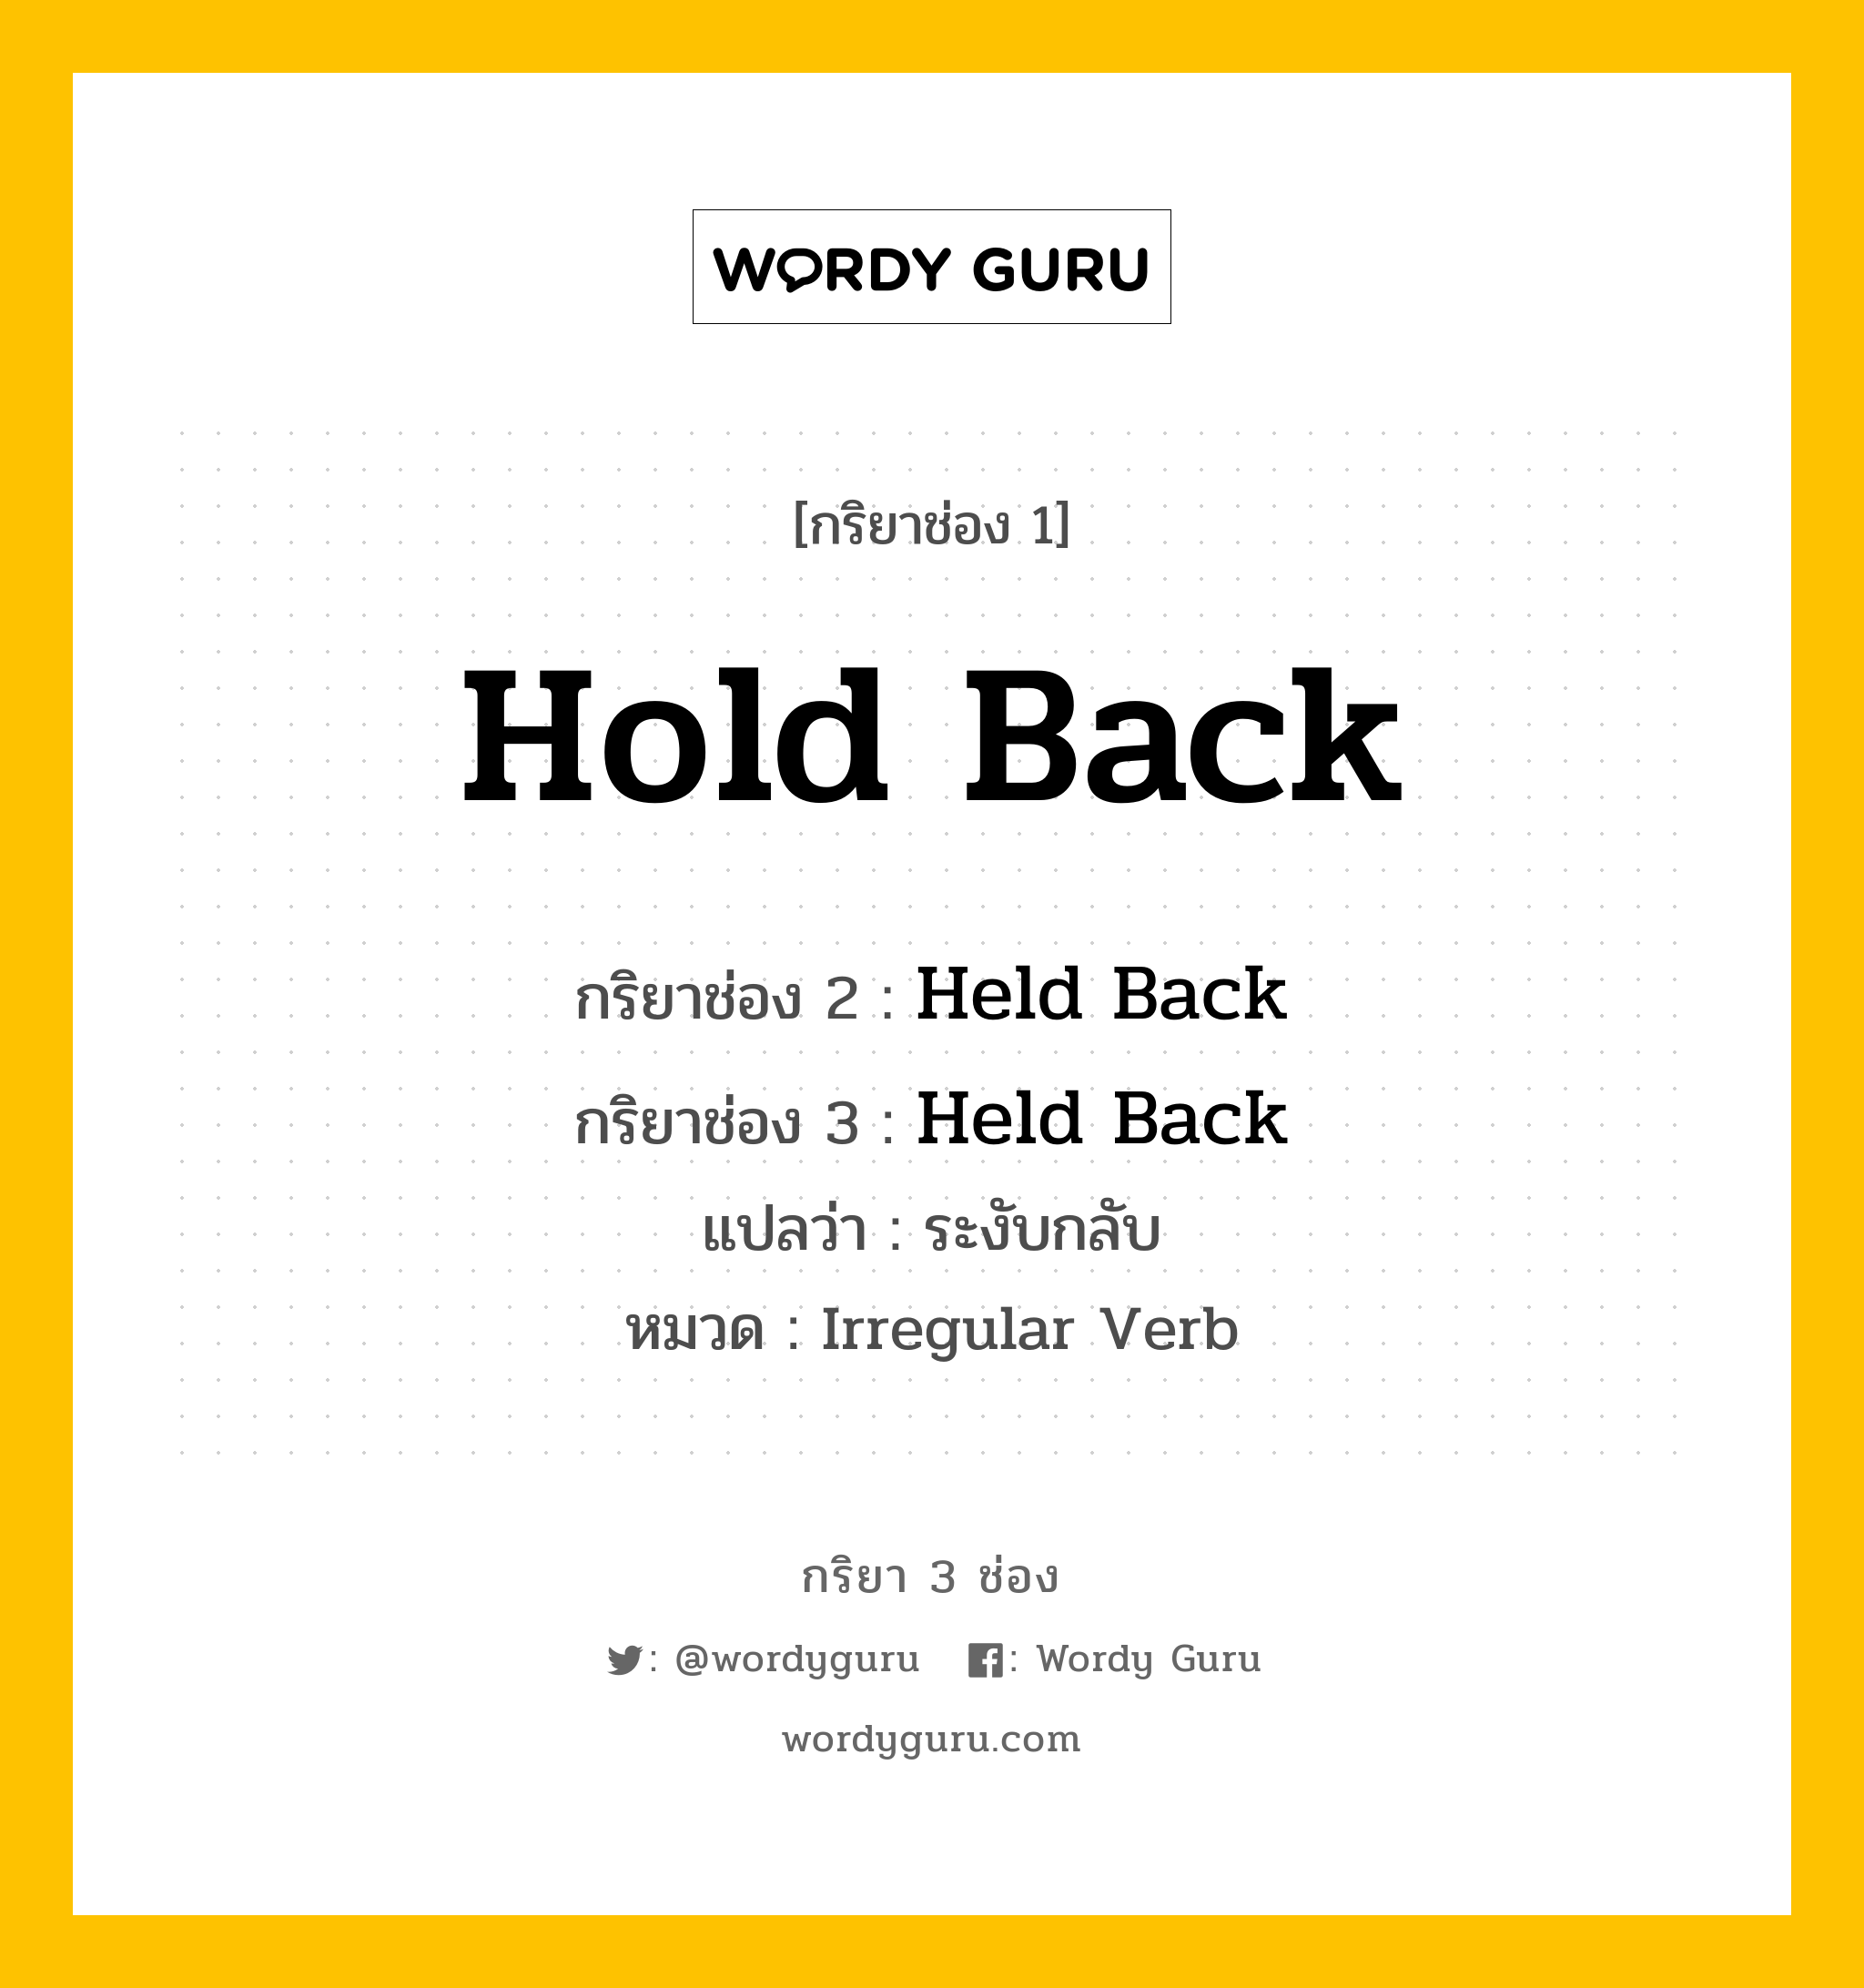 กริยา 3 ช่อง: Hold Back ช่อง 2 Hold Back ช่อง 3 คืออะไร, กริยาช่อง 1 Hold Back กริยาช่อง 2 Held Back กริยาช่อง 3 Held Back แปลว่า ระงับกลับ หมวด Irregular Verb หมวด Irregular Verb